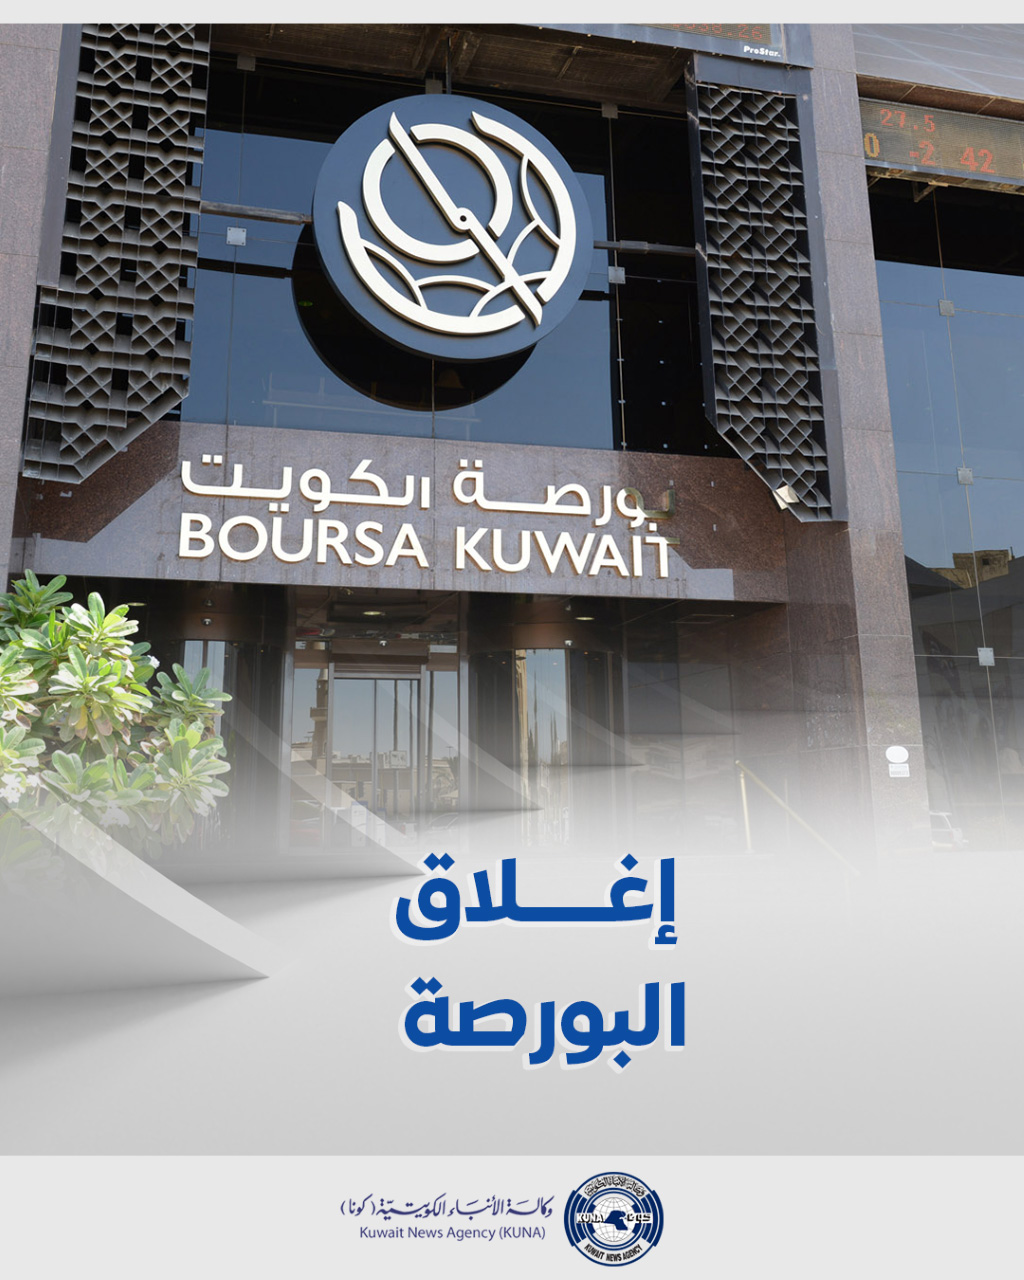 بورصة الكويت تغلق تعاملاتها على انخفاض مؤشرها العام 36 نقطة ليبلغ 66ر7338 بنسبة 49ر0 في المئة                                                                                                                                                             